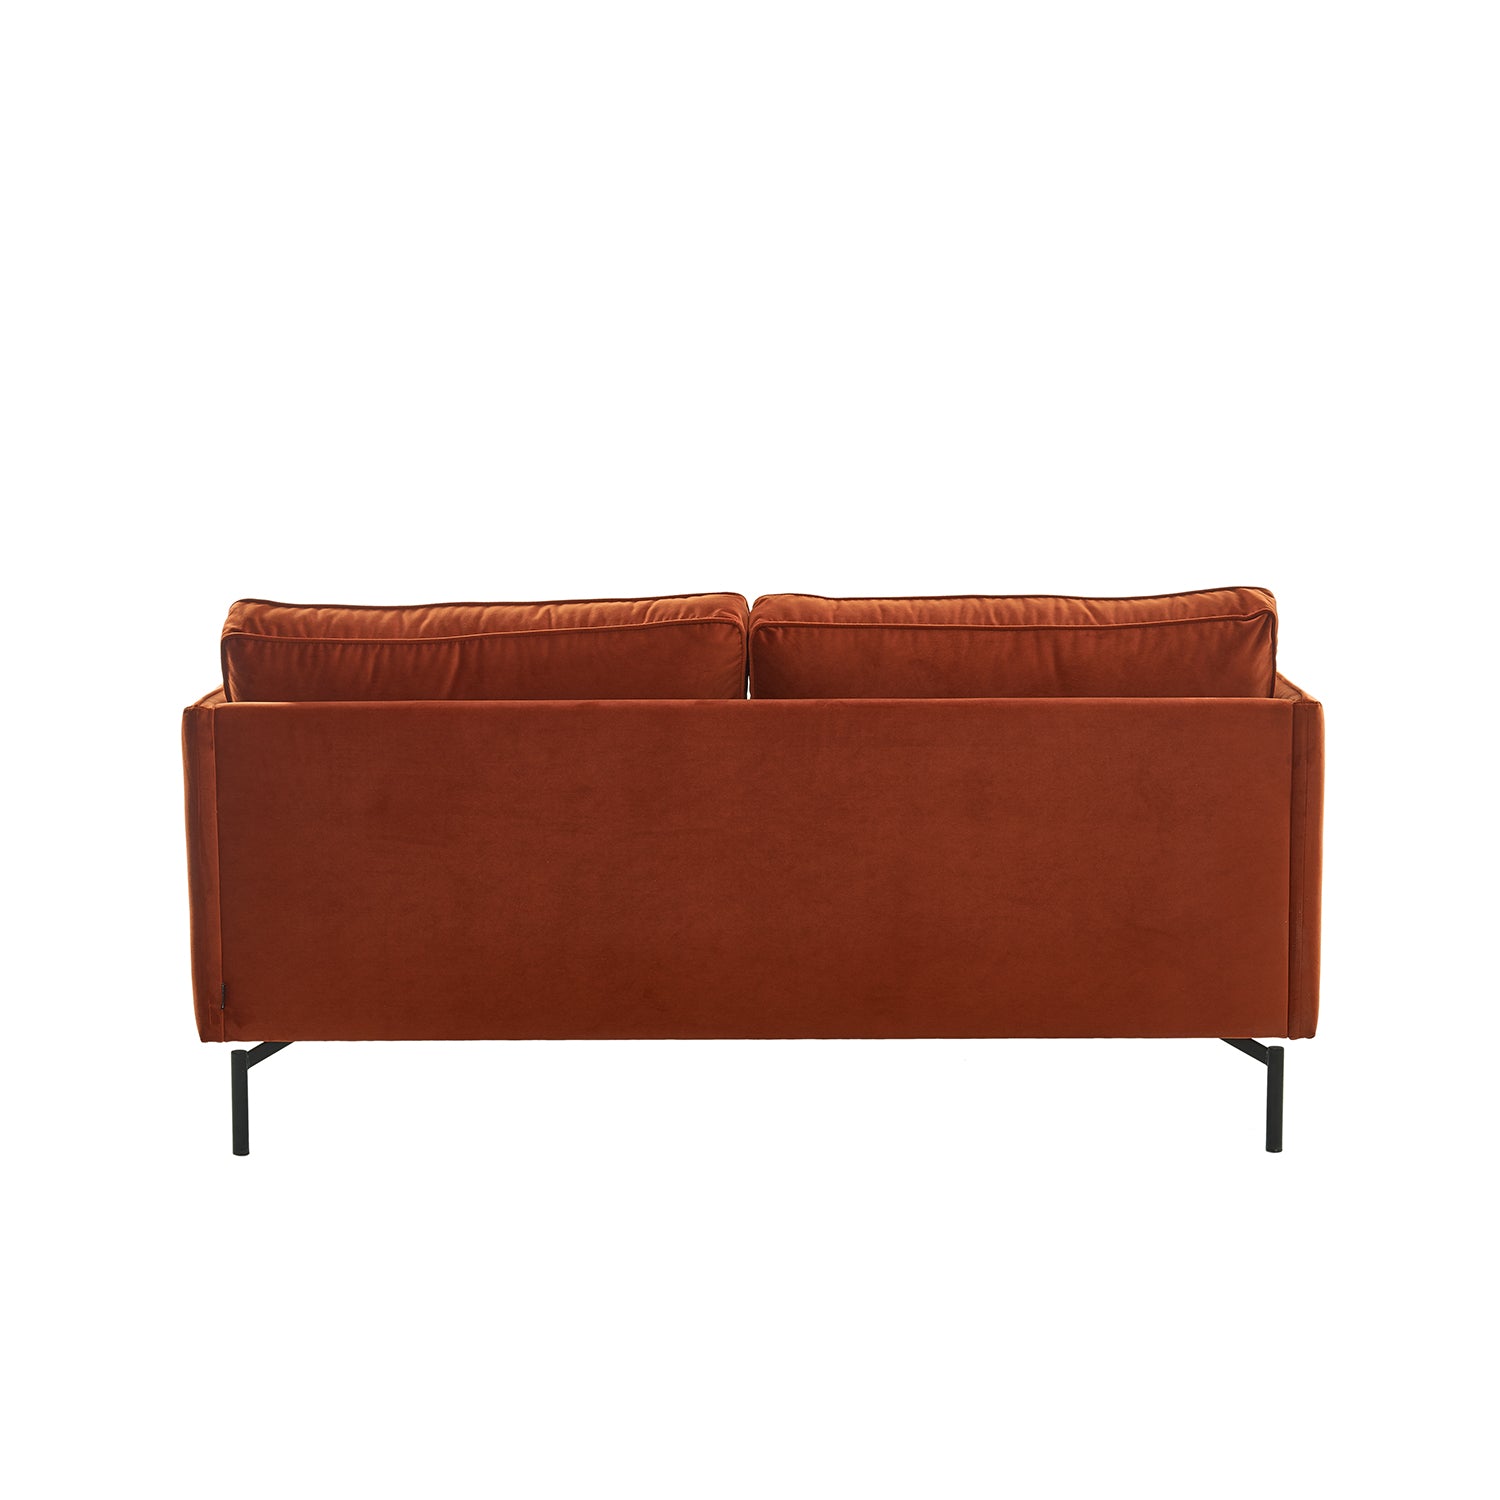 PPno.2 Sofa - The Design Choice